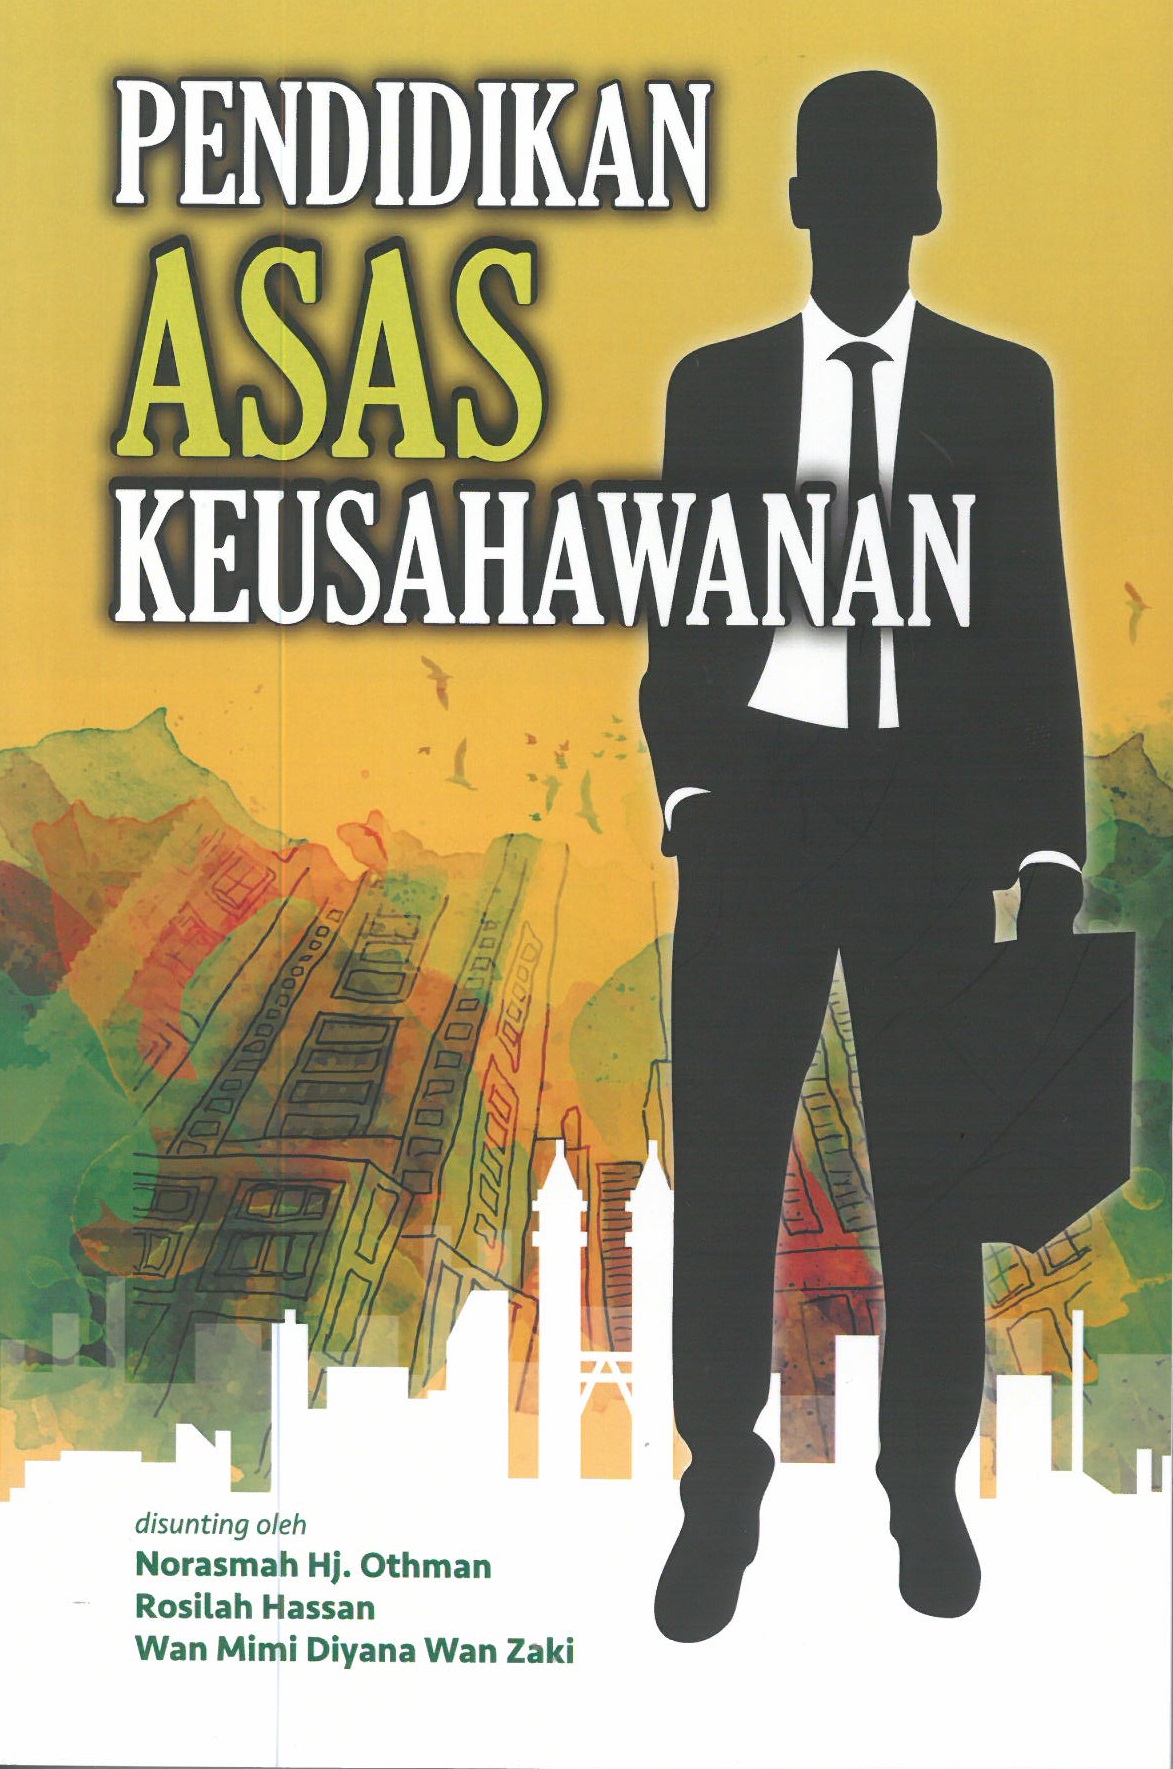 Pendidikan Asas Keusahawanan - Malaysia's Online Bookstore"